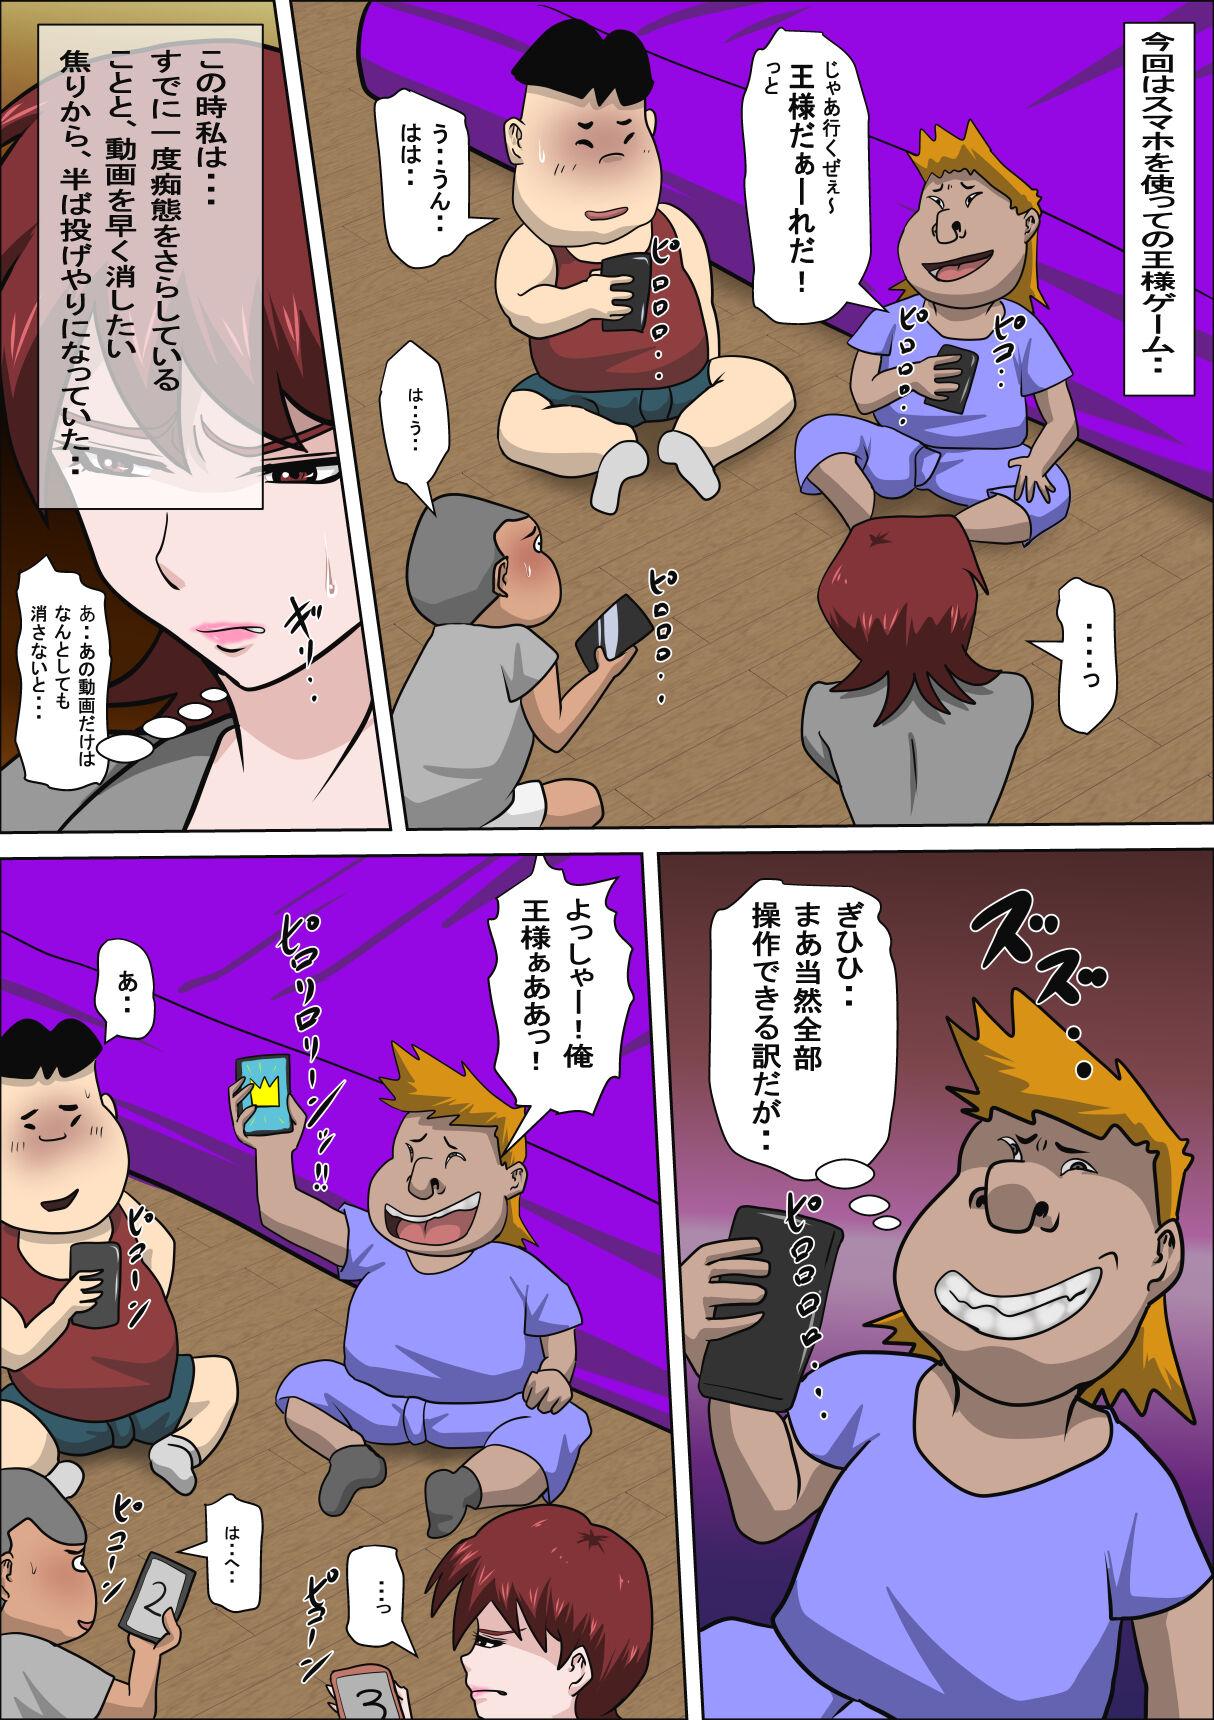 Flash Musuko no Doukyuusei ni Makura Eigyou Monogatari 4 - Original Indo - Page 6